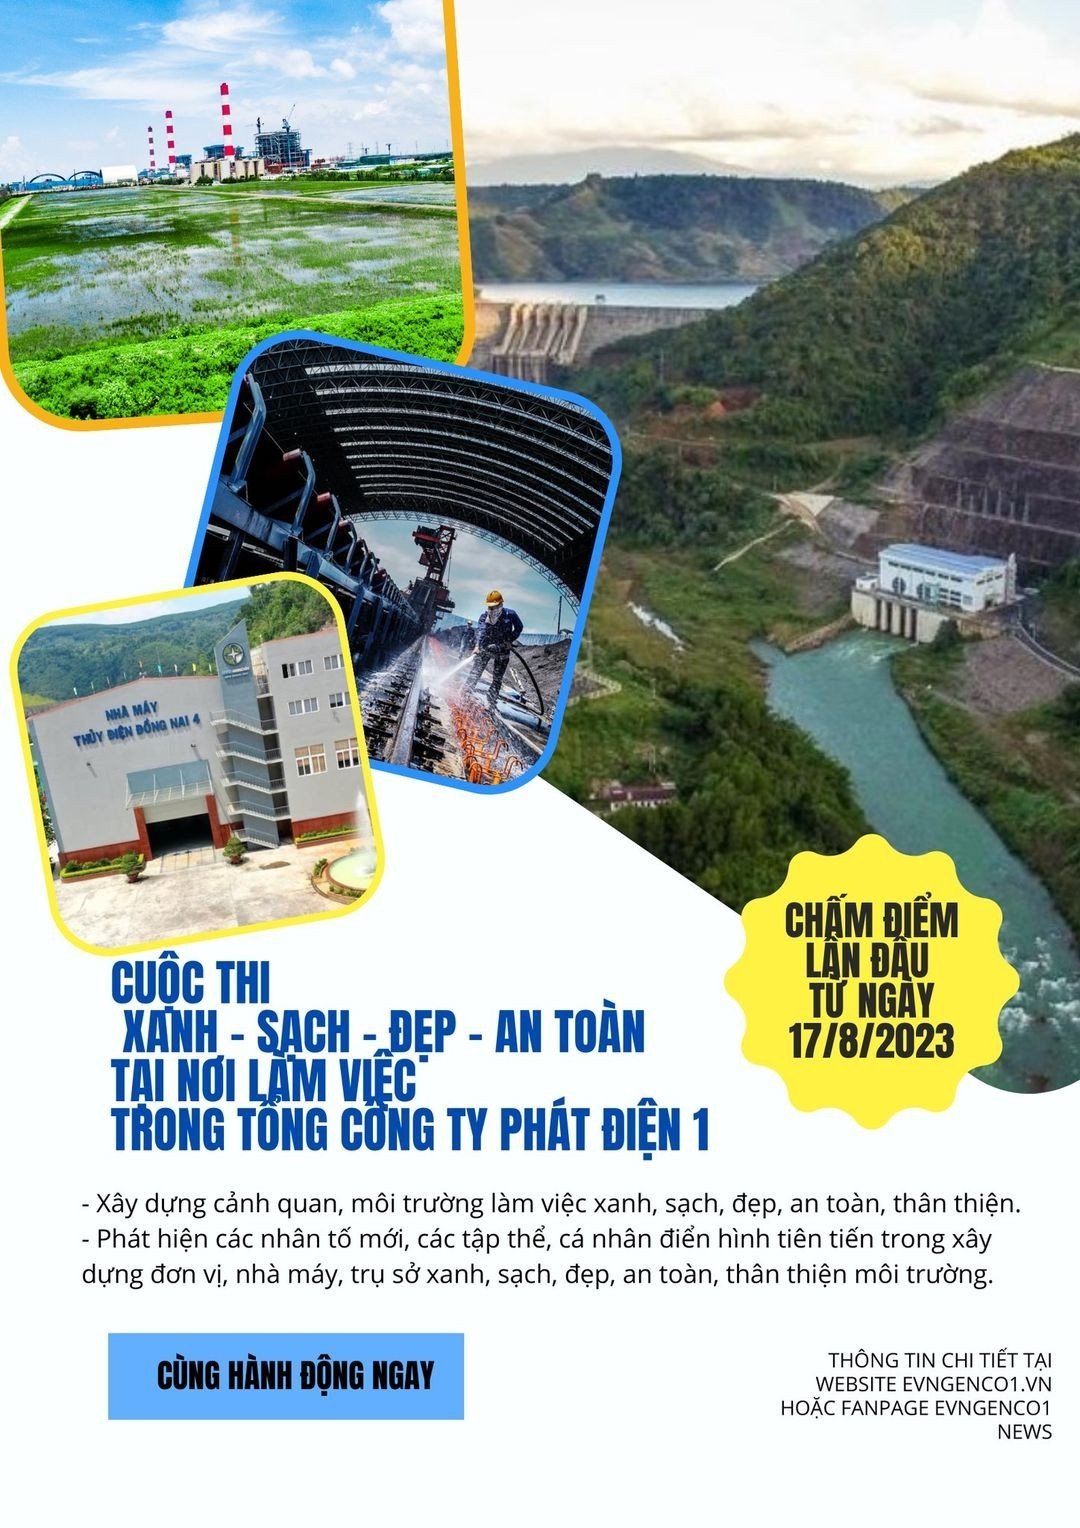 Kế hoạch liên tịch về việc tổ chức, phát động cuộc thi “Xanh - Sạch - Đẹp - An toàn tại nơi làm việc” trong Công ty Thủy điện Đại Ninh.